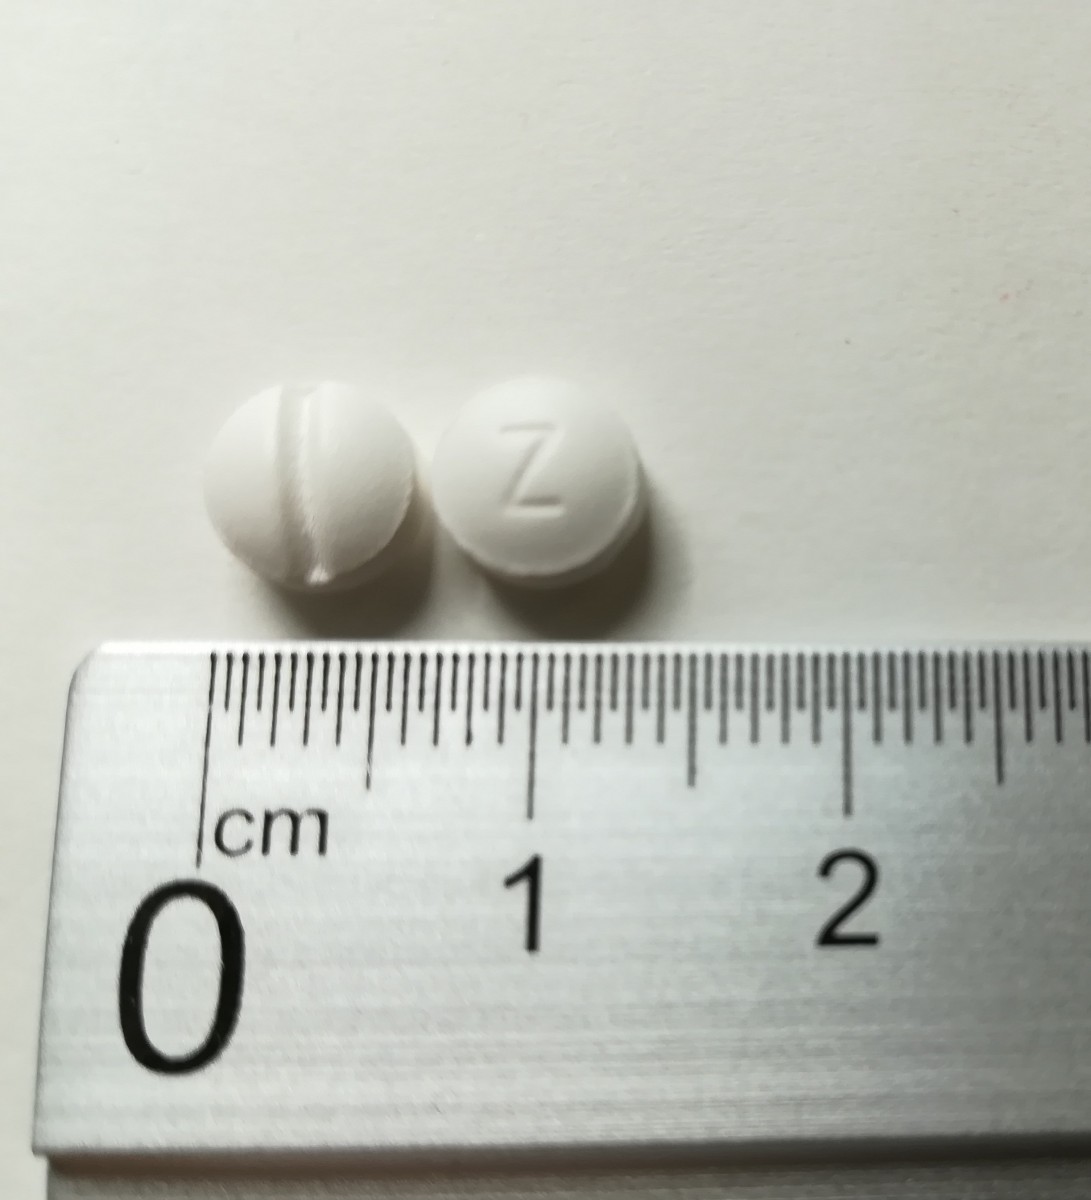 ZOLPIDEM NORMON 10 mg COMPRIMIDOS RECUBIERTOS CON PELICULA EFG , 500 comprimidos fotografía de la forma farmacéutica.